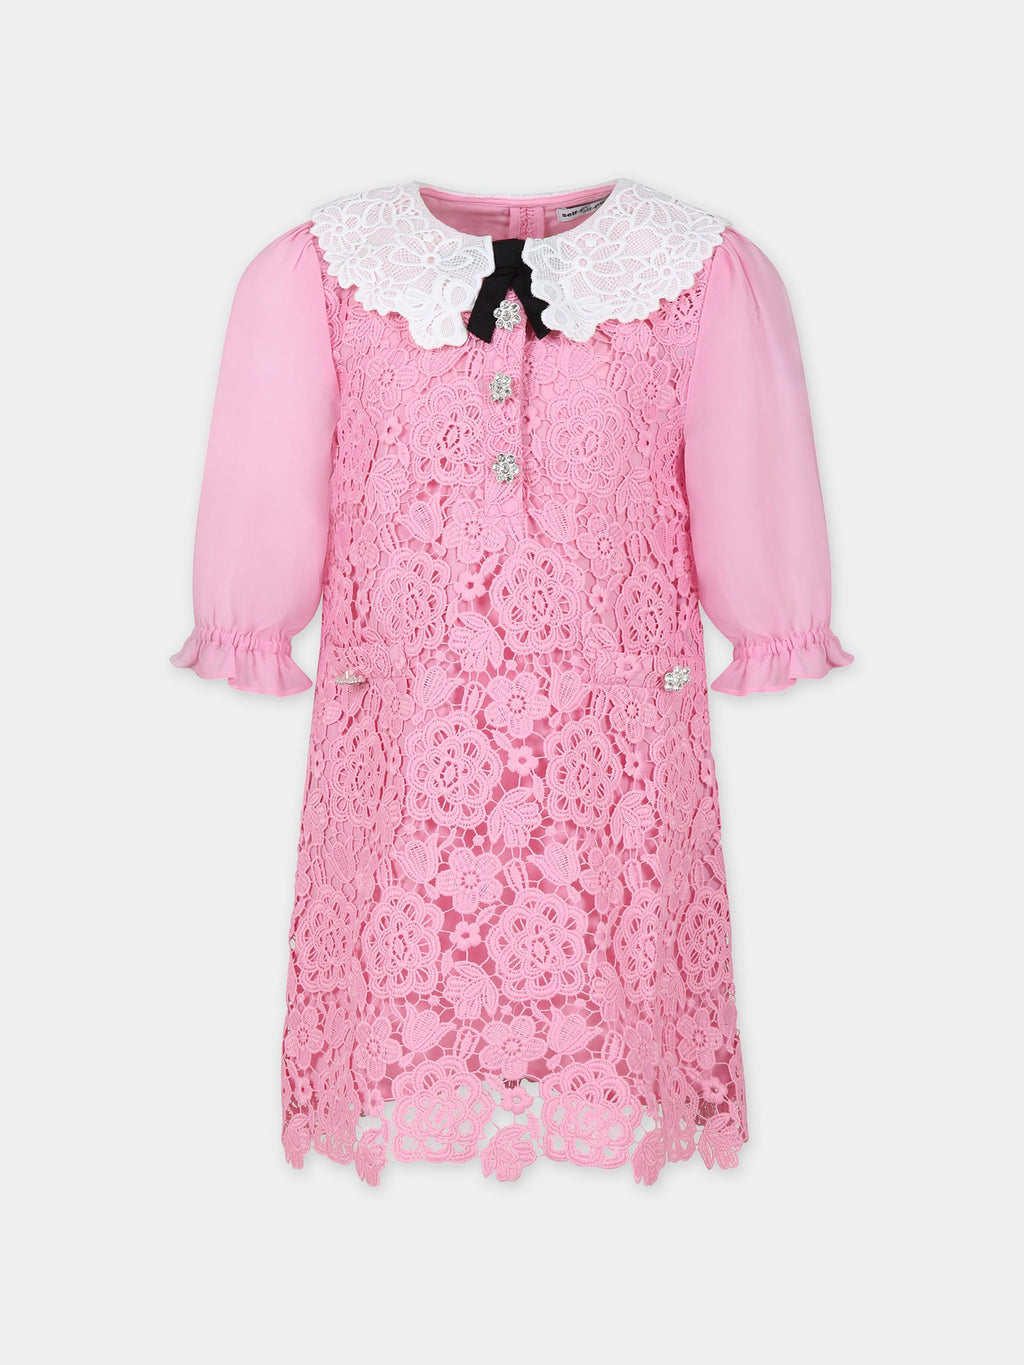 Robe rose élégante pour fille en dentelle macramé